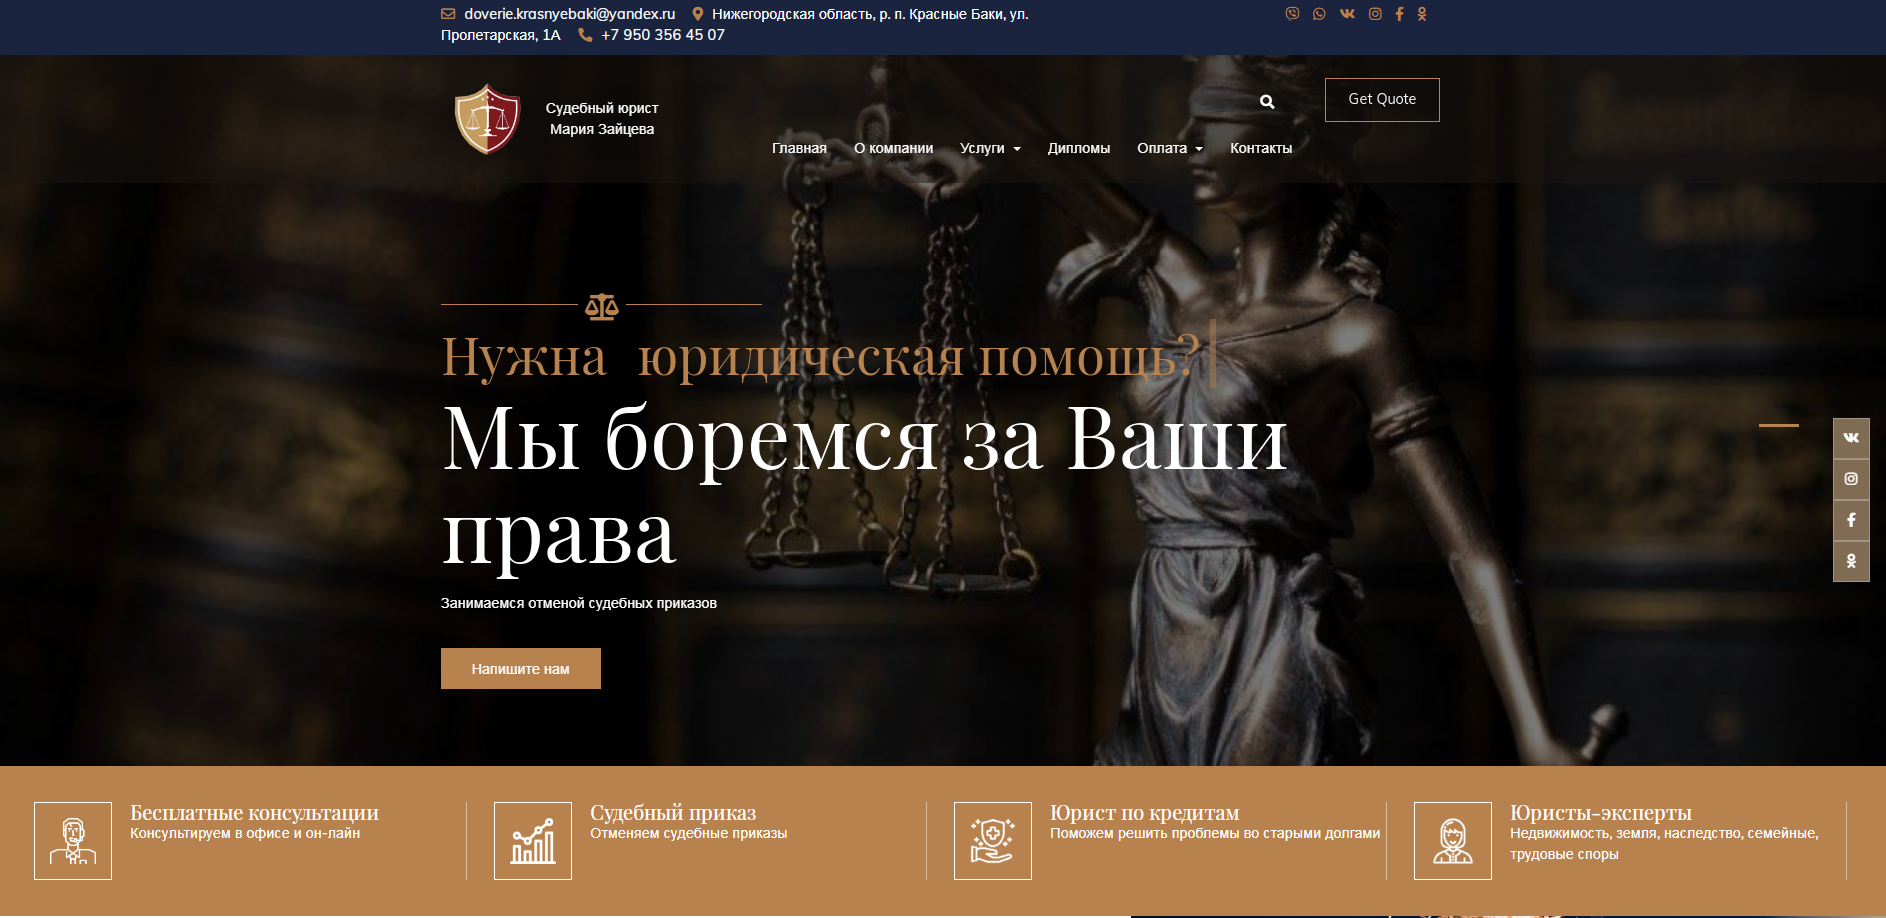 Судебный юрист Мария зайцева, разработка сайтов